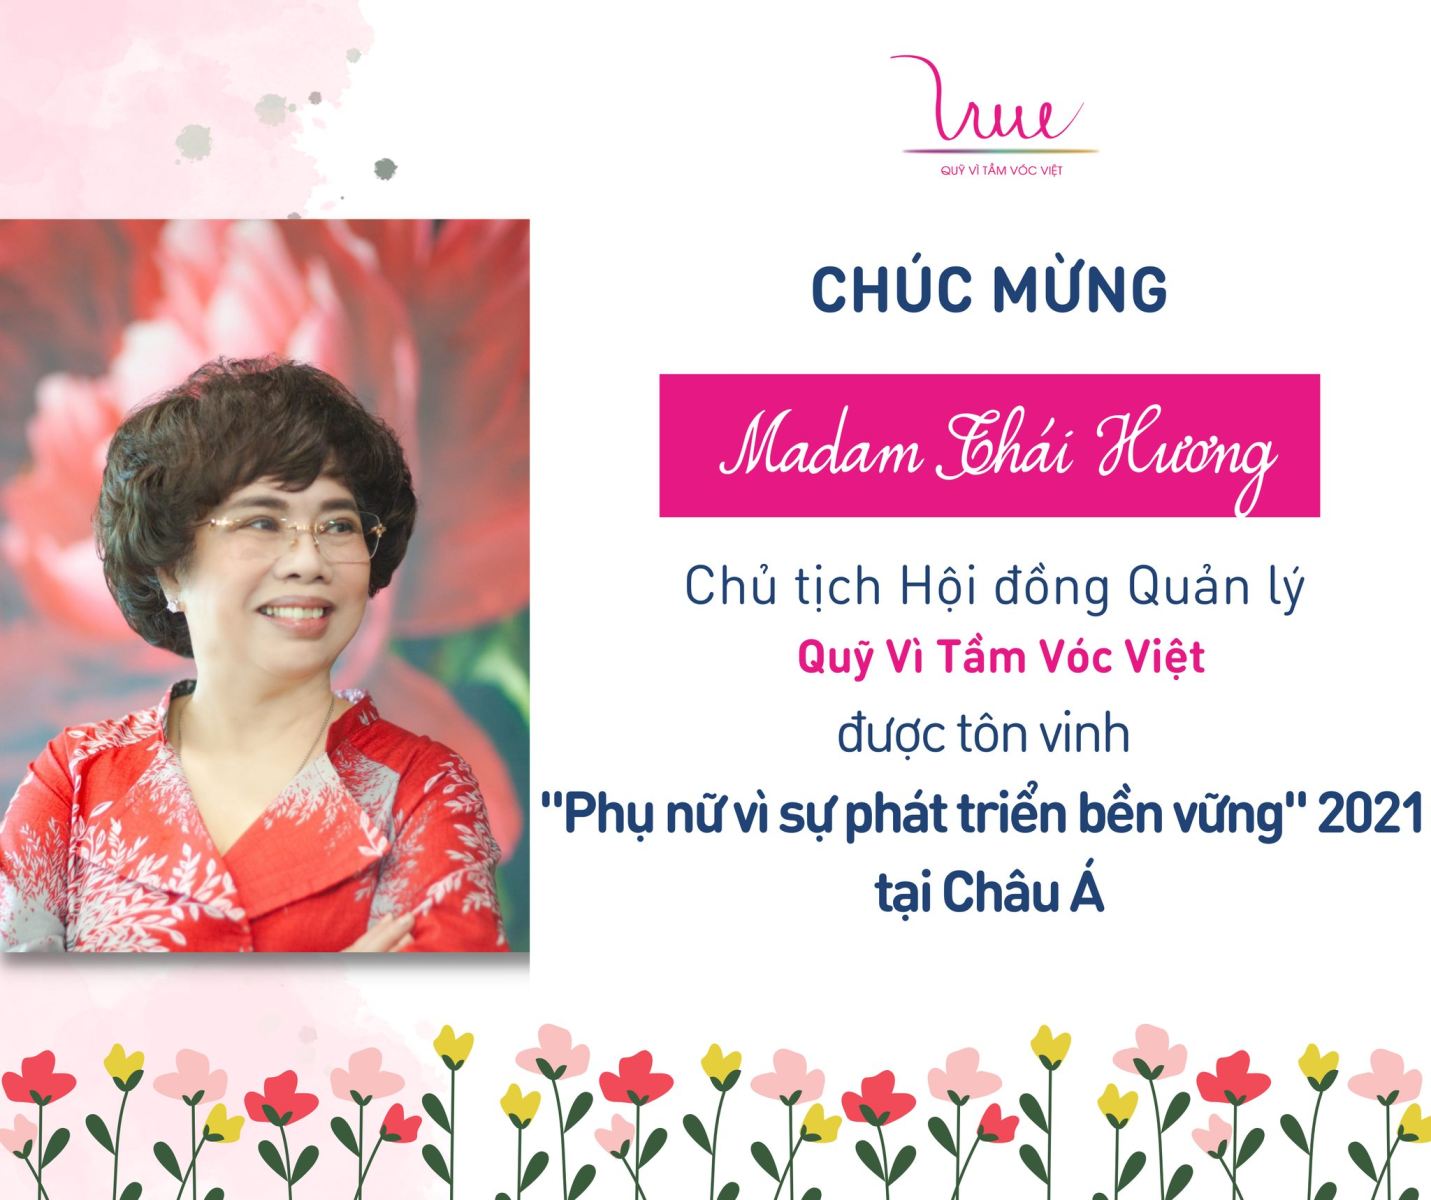 Chúc mừng Chủ tịch Hội đồng Quản lý Quỹ Vì Tầm Vóc Việt được tôn vinh “Phụ nữ vì sự phát triển bền vững” 2021 tại Châu Á